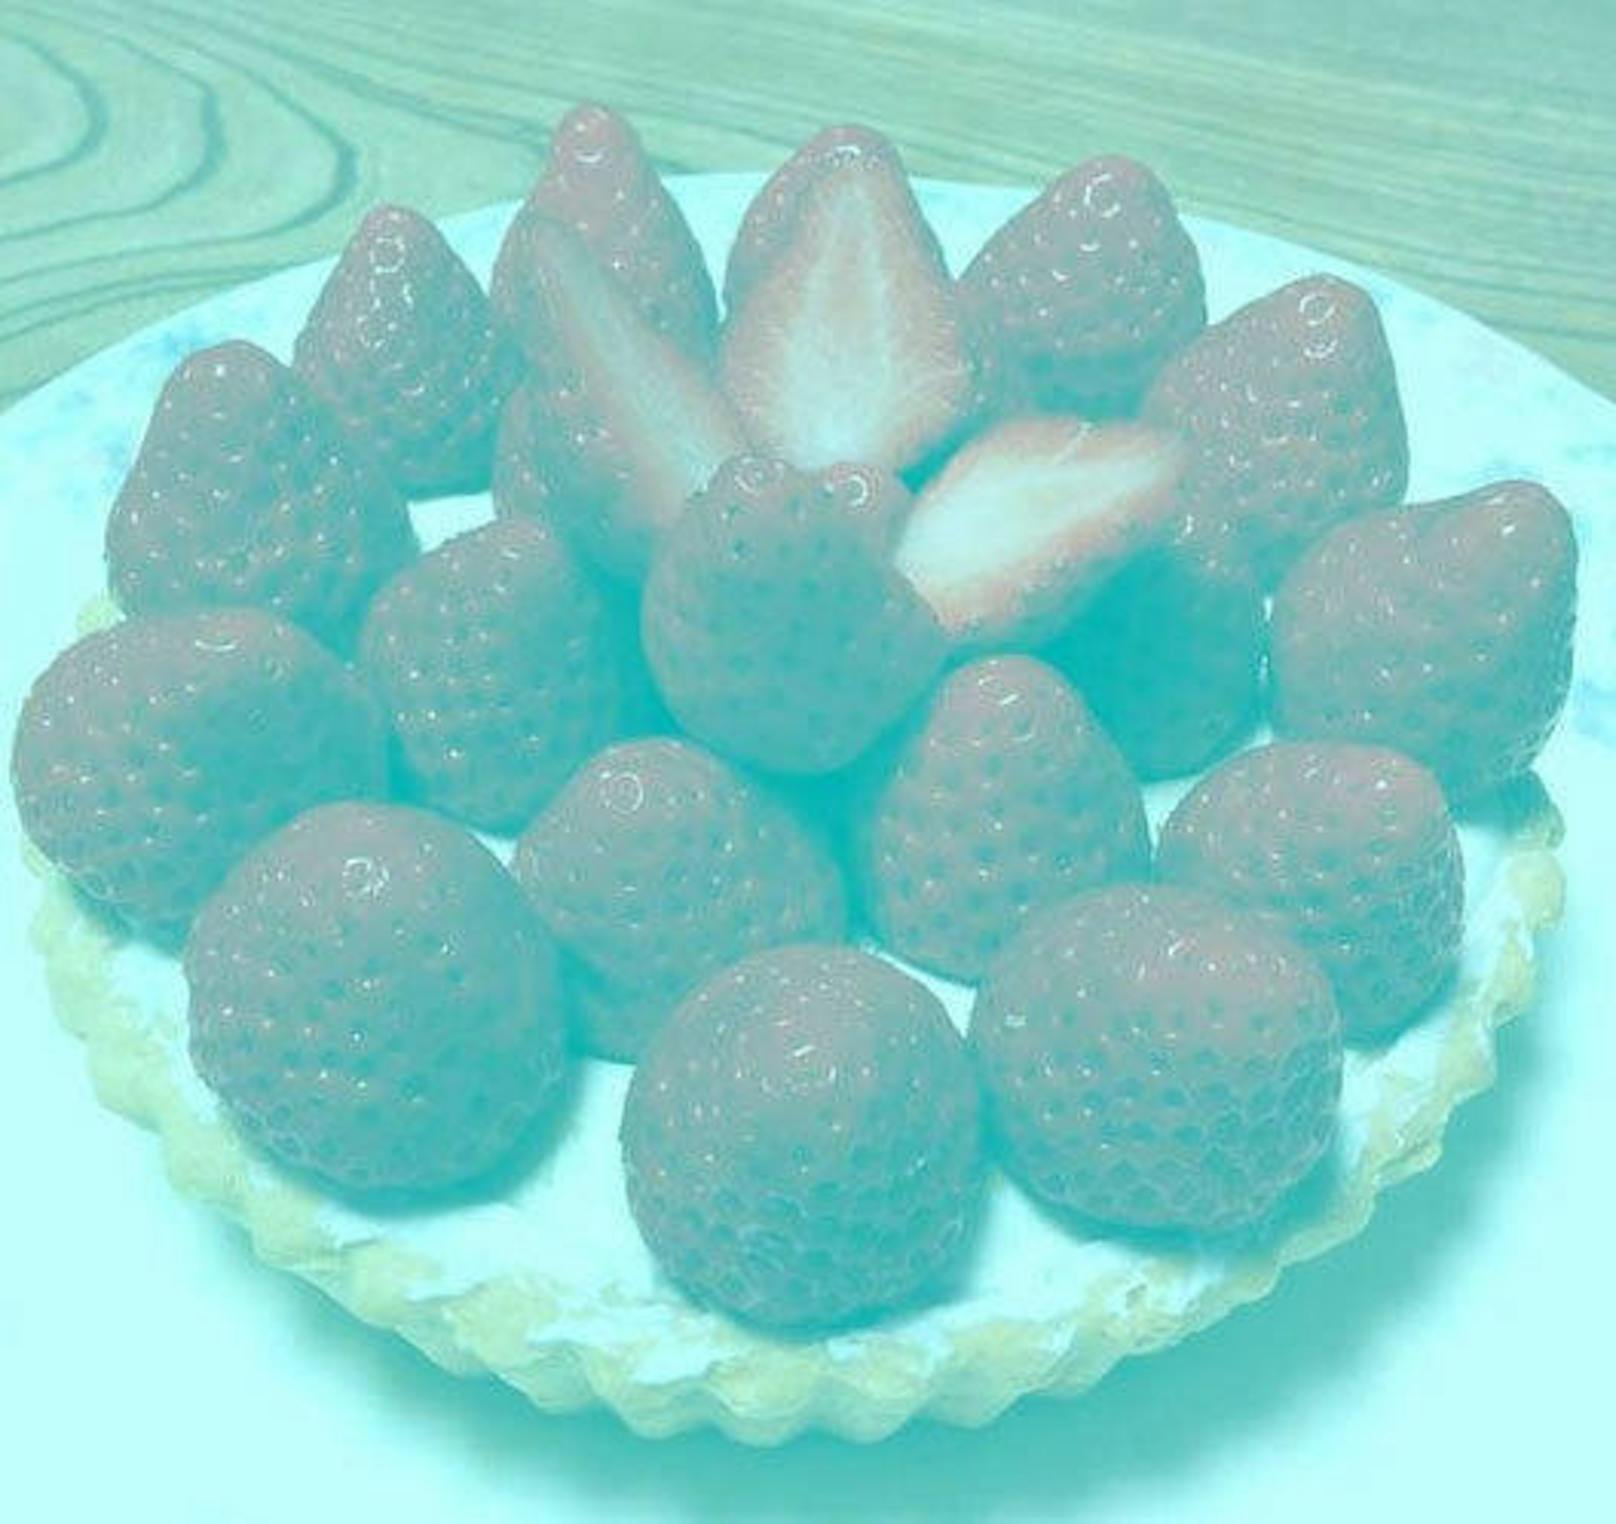 Auch über diese Erdbeeren rätselte das Netz: Hier ist nämlich kein einziges rotes Pixel vorhanden, die Erdbeeren sind graublau. Das Gehirn lässt sie dennoch rot erscheinen. Farbkonstanz nennt sich dieses Phänomen.